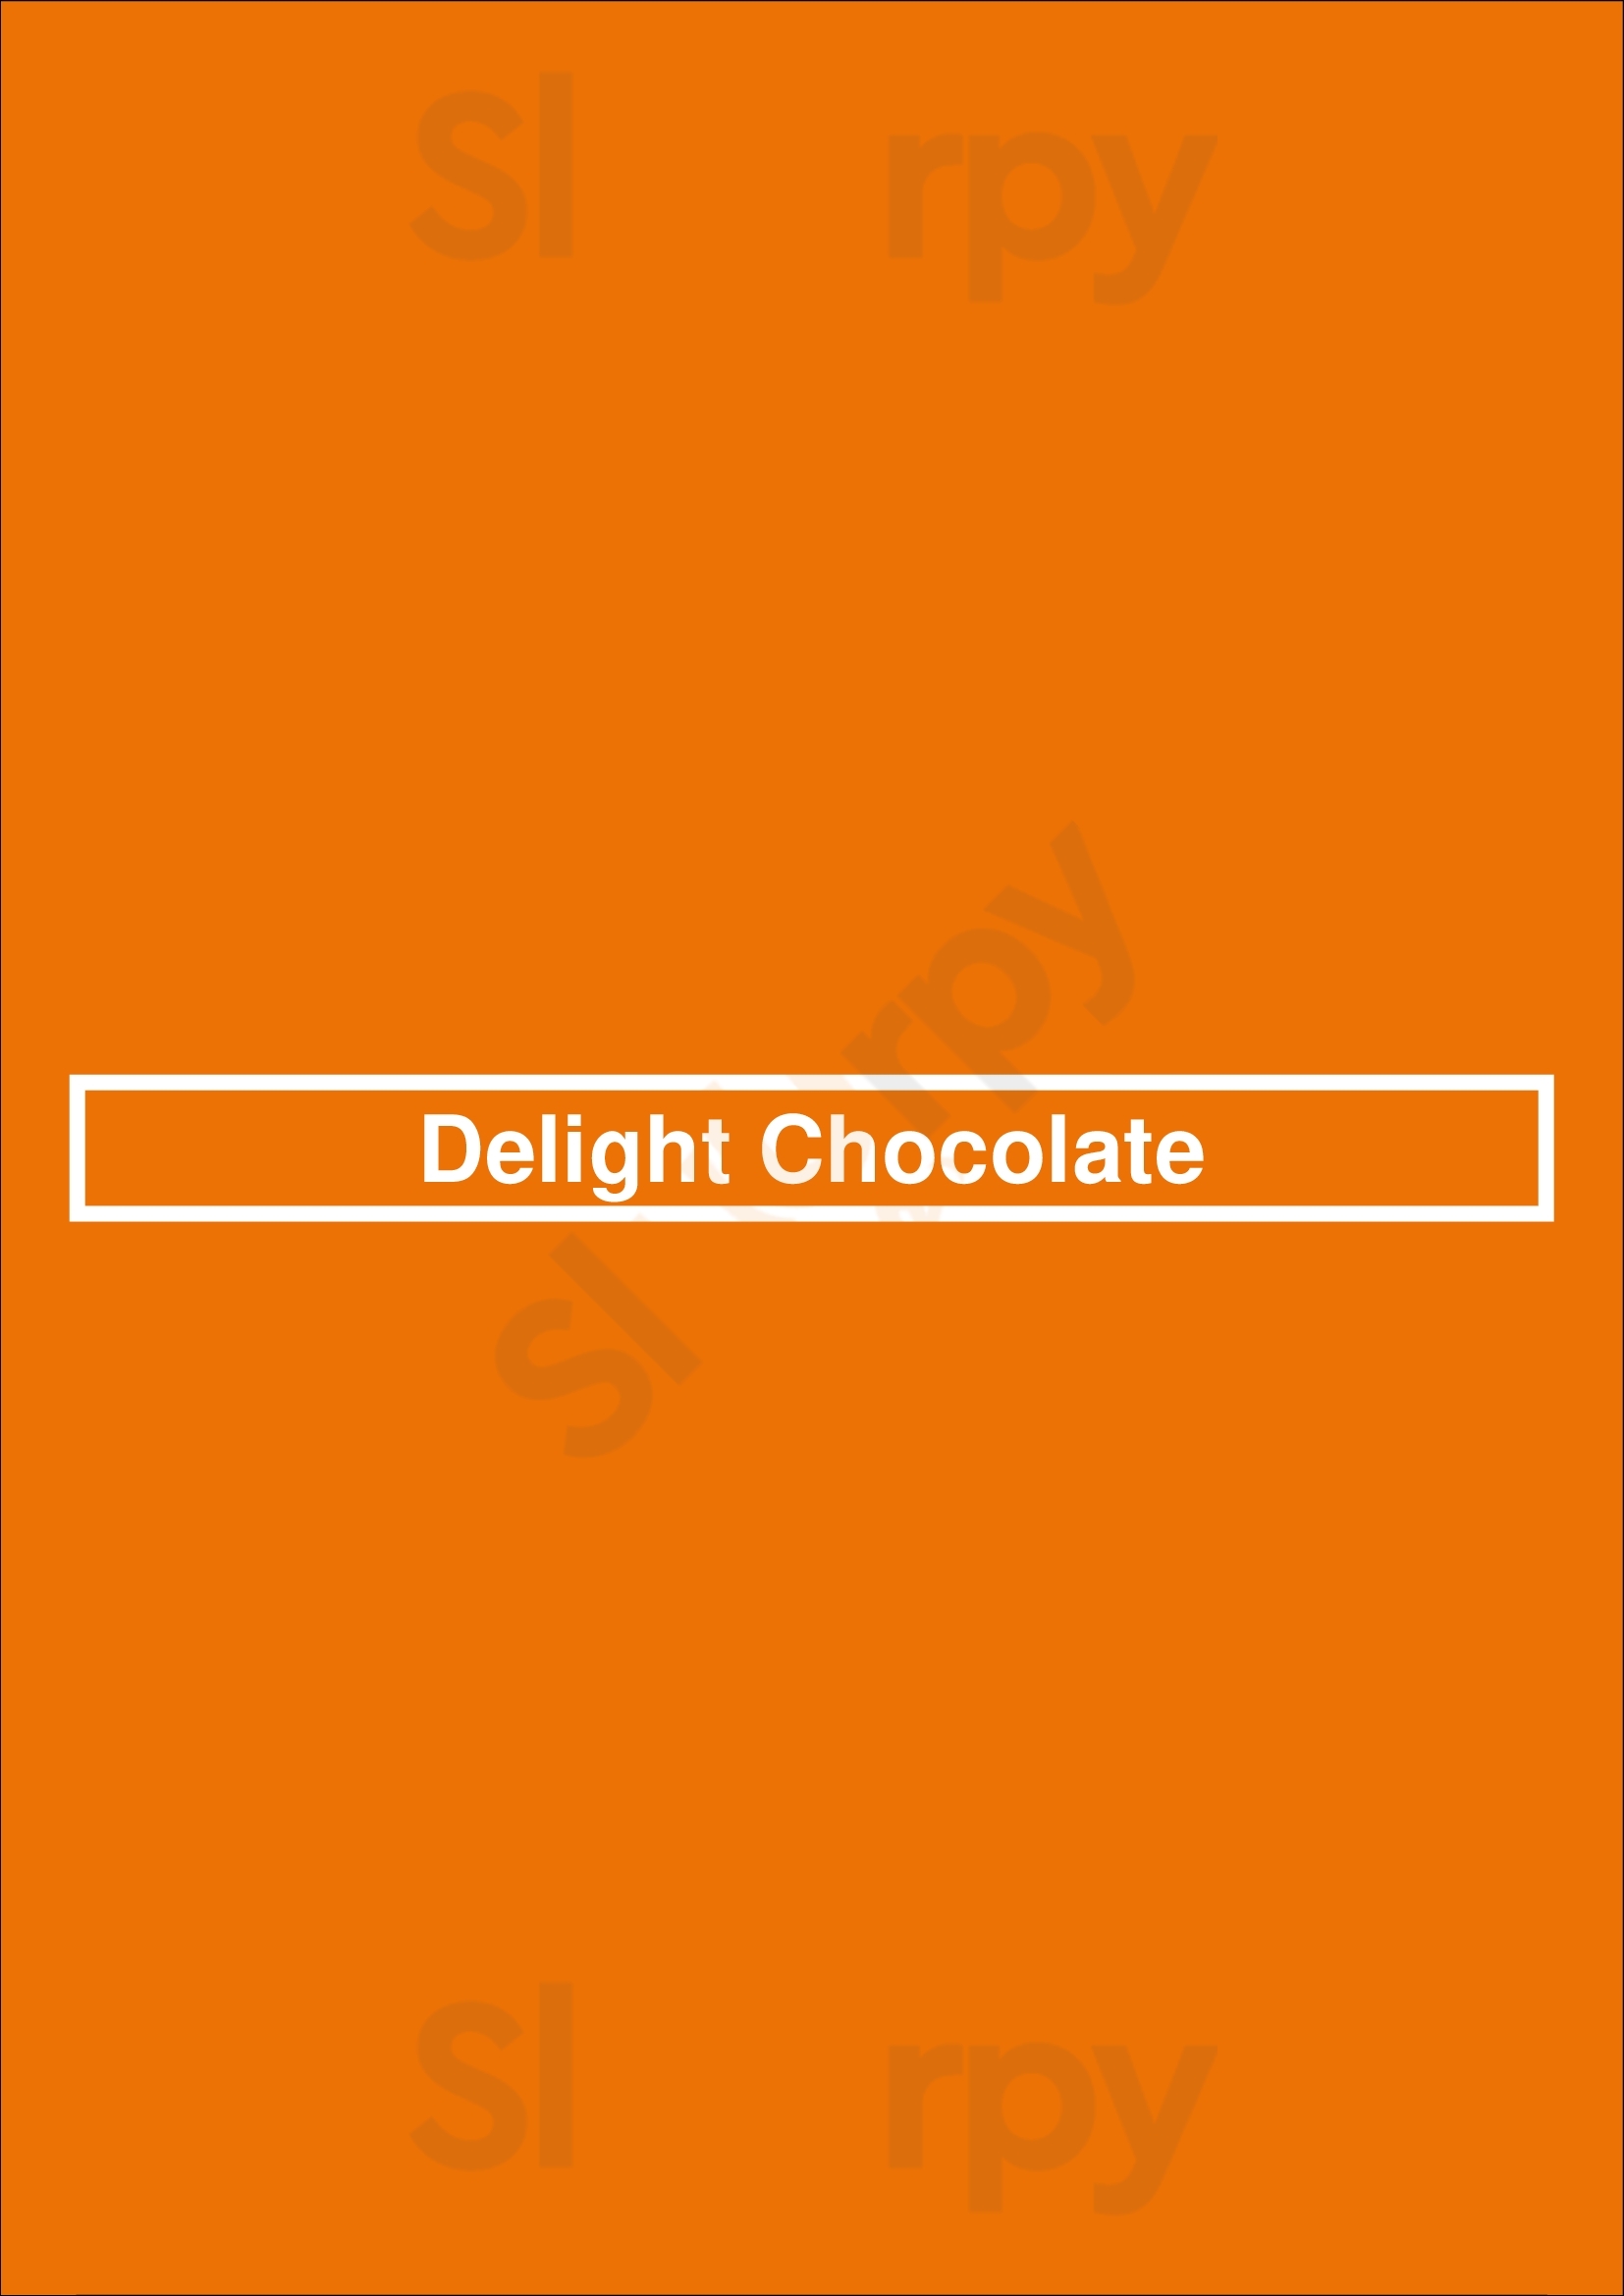 Delight Chocolate Toronto Menu - 1